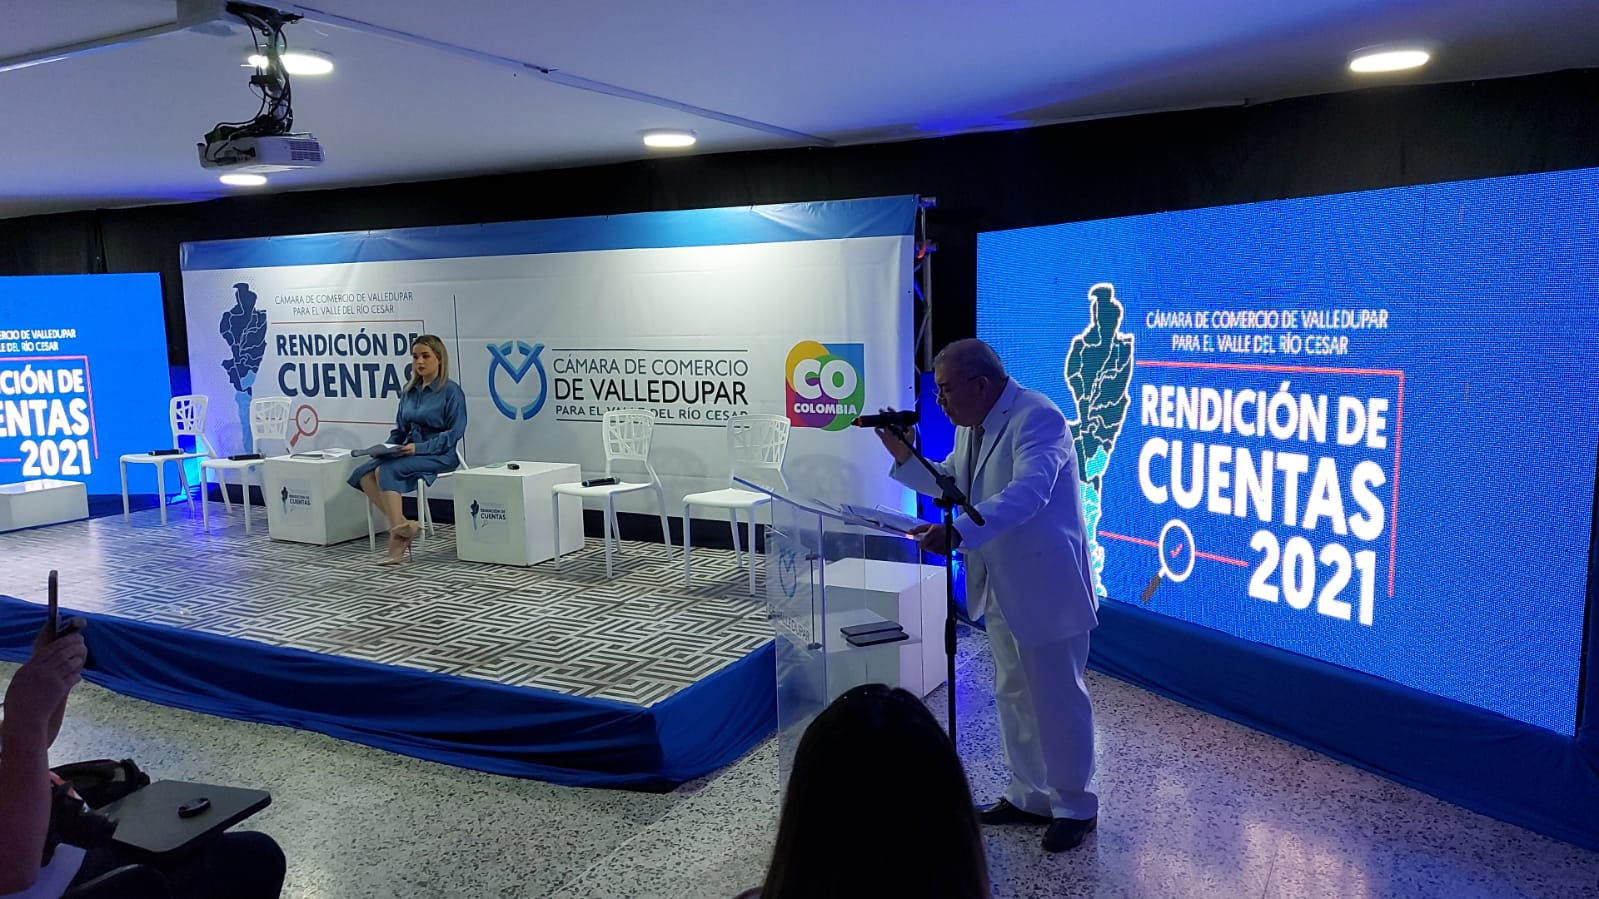 La Cámara de Comercio de Valledupar realizó la rendición de cuentas vigencia 2021 en cabeza del presidente ejecutivo José Luis Urón